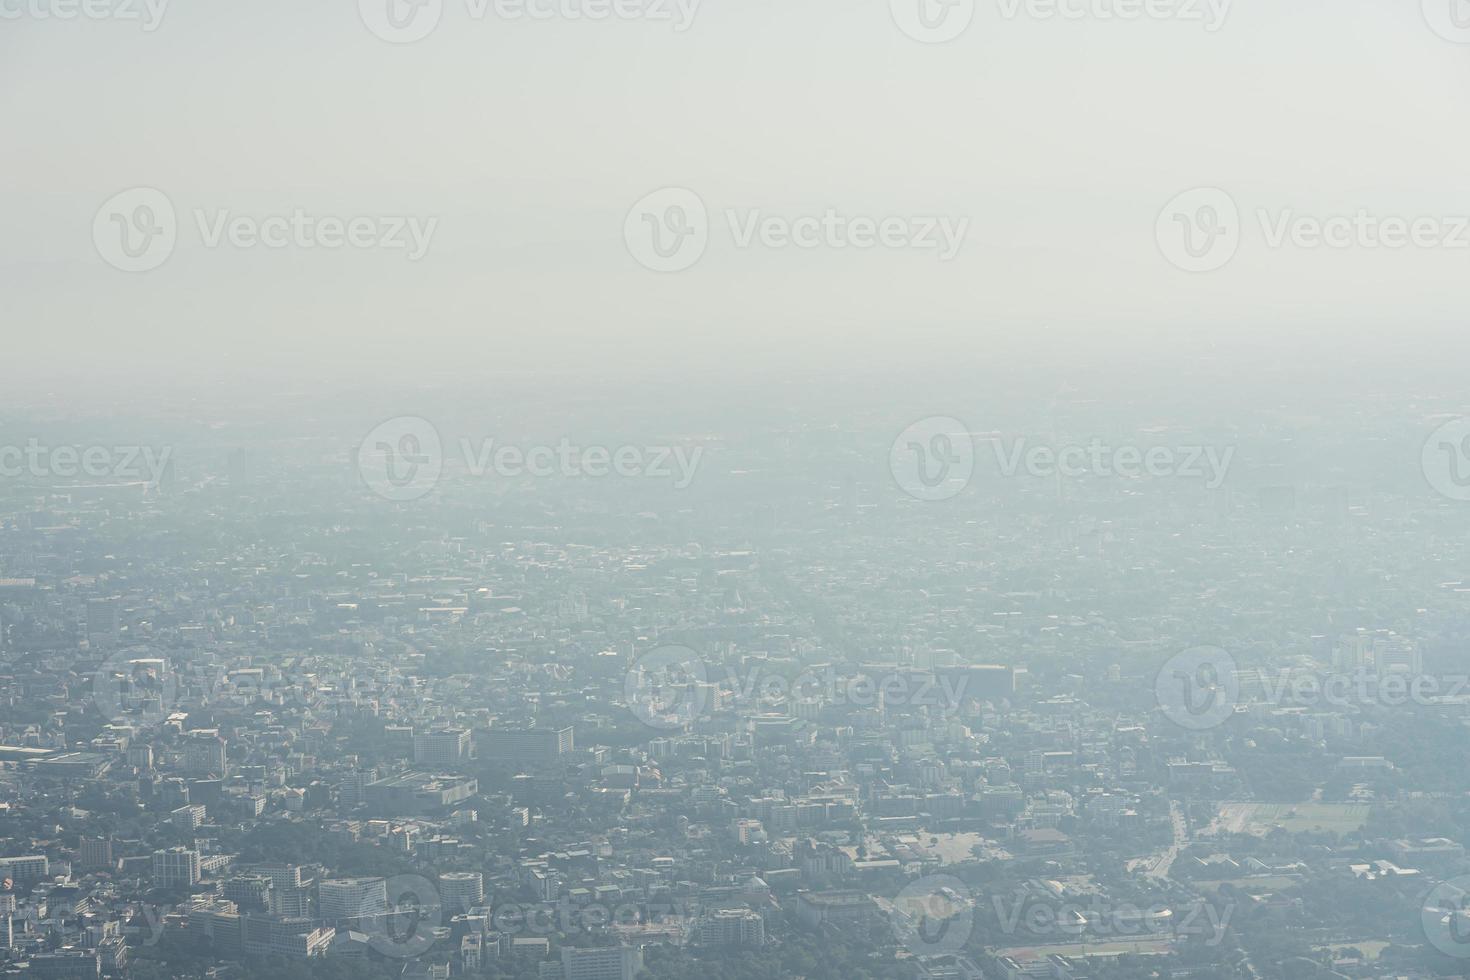 utsikt från toppen av berget pm 2,5 luftföroreningsproblem i chiang mai, thailand. foto